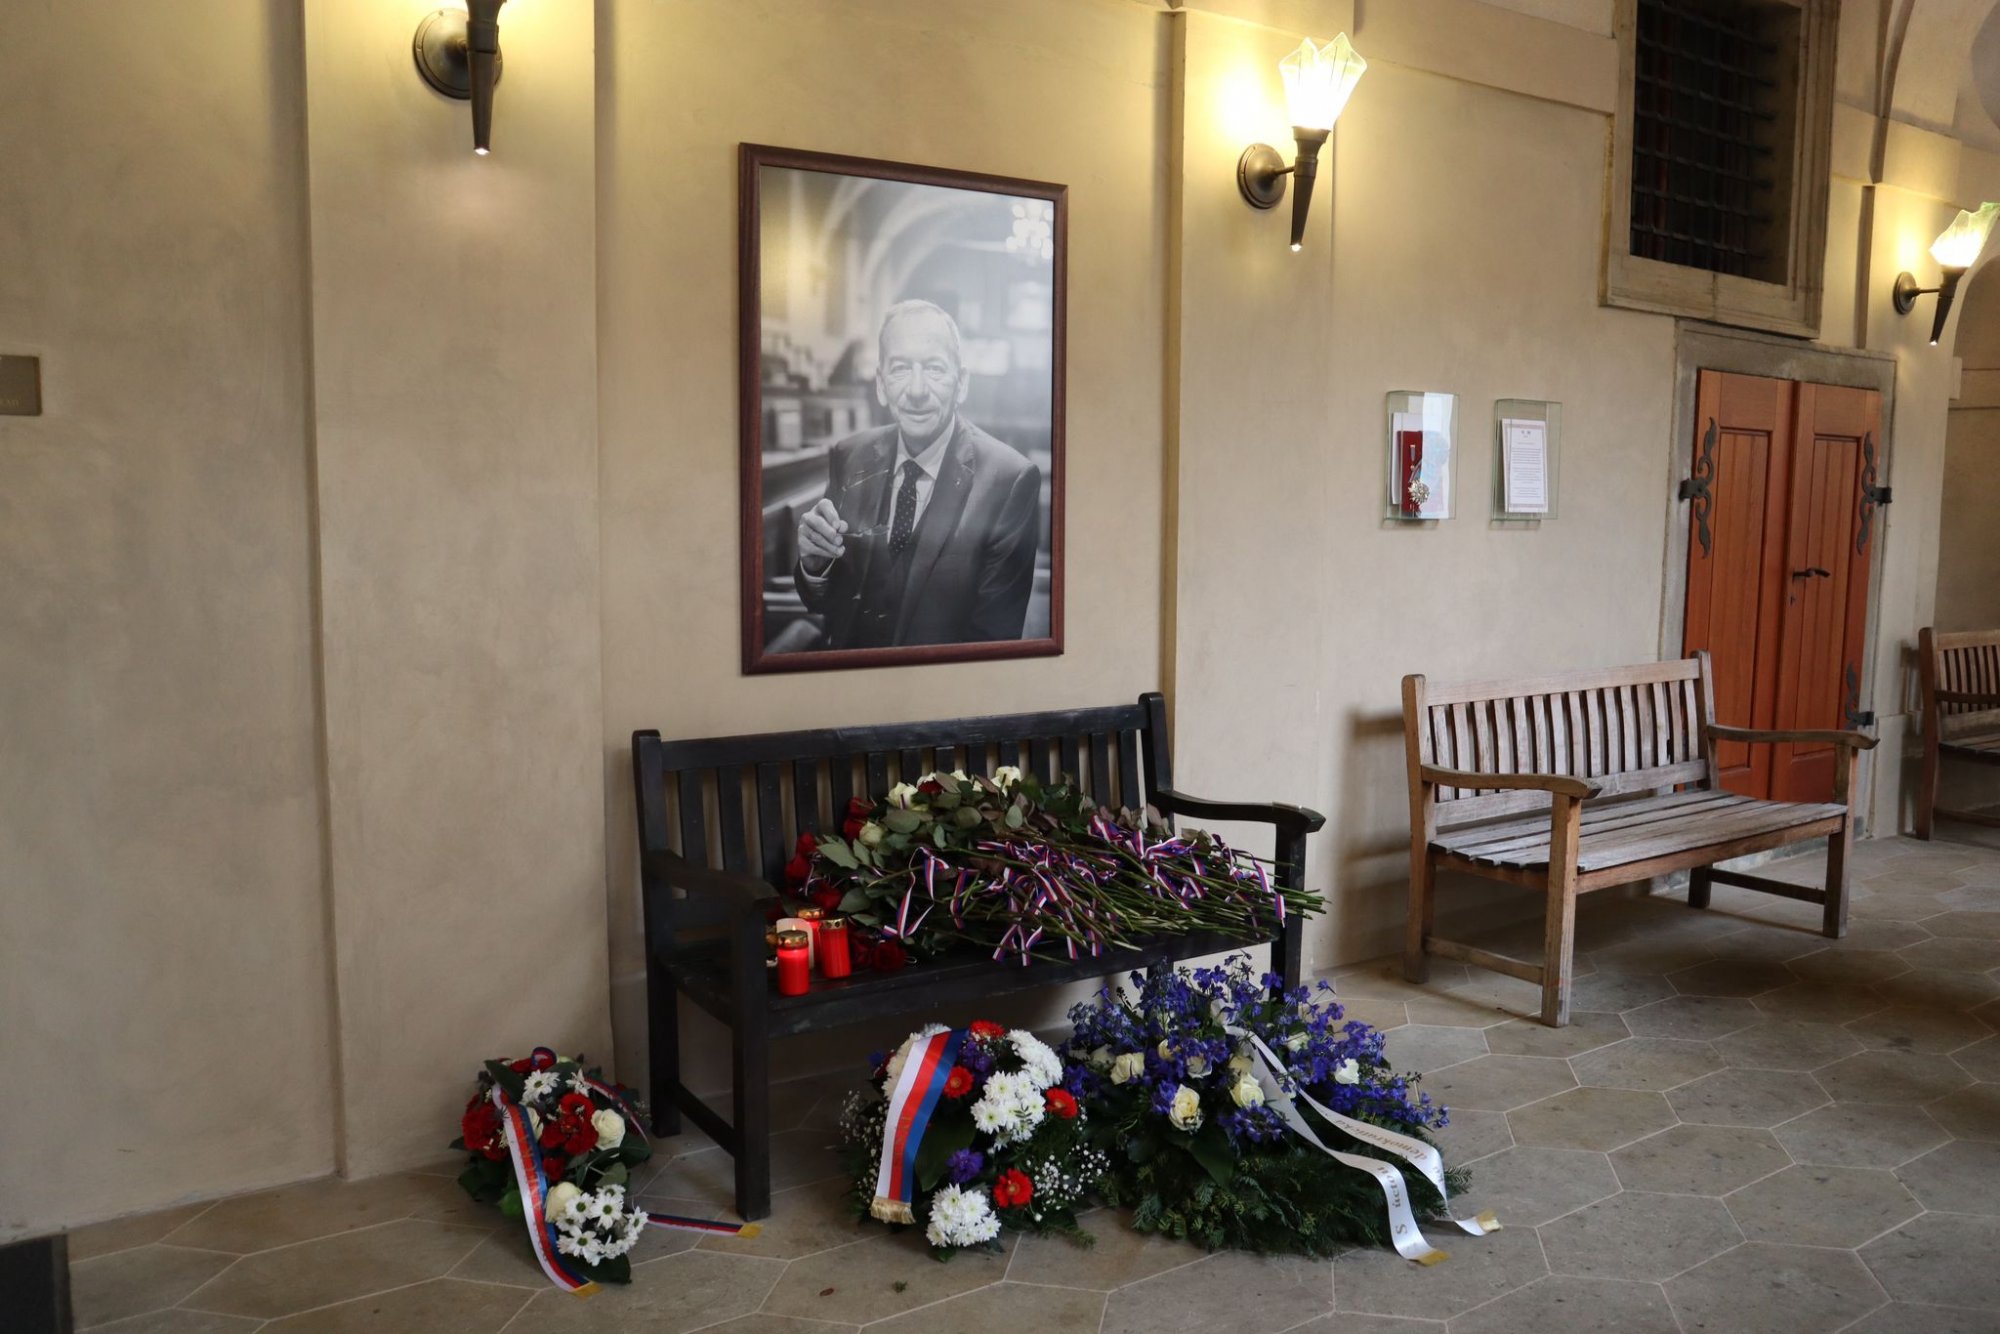 Občanští demokraté připomněli v Senátu smutné čtyřleté výročí od úmrtí Jaroslava Kubery – vzpomínkami, humorem i zapálenou cigaretou